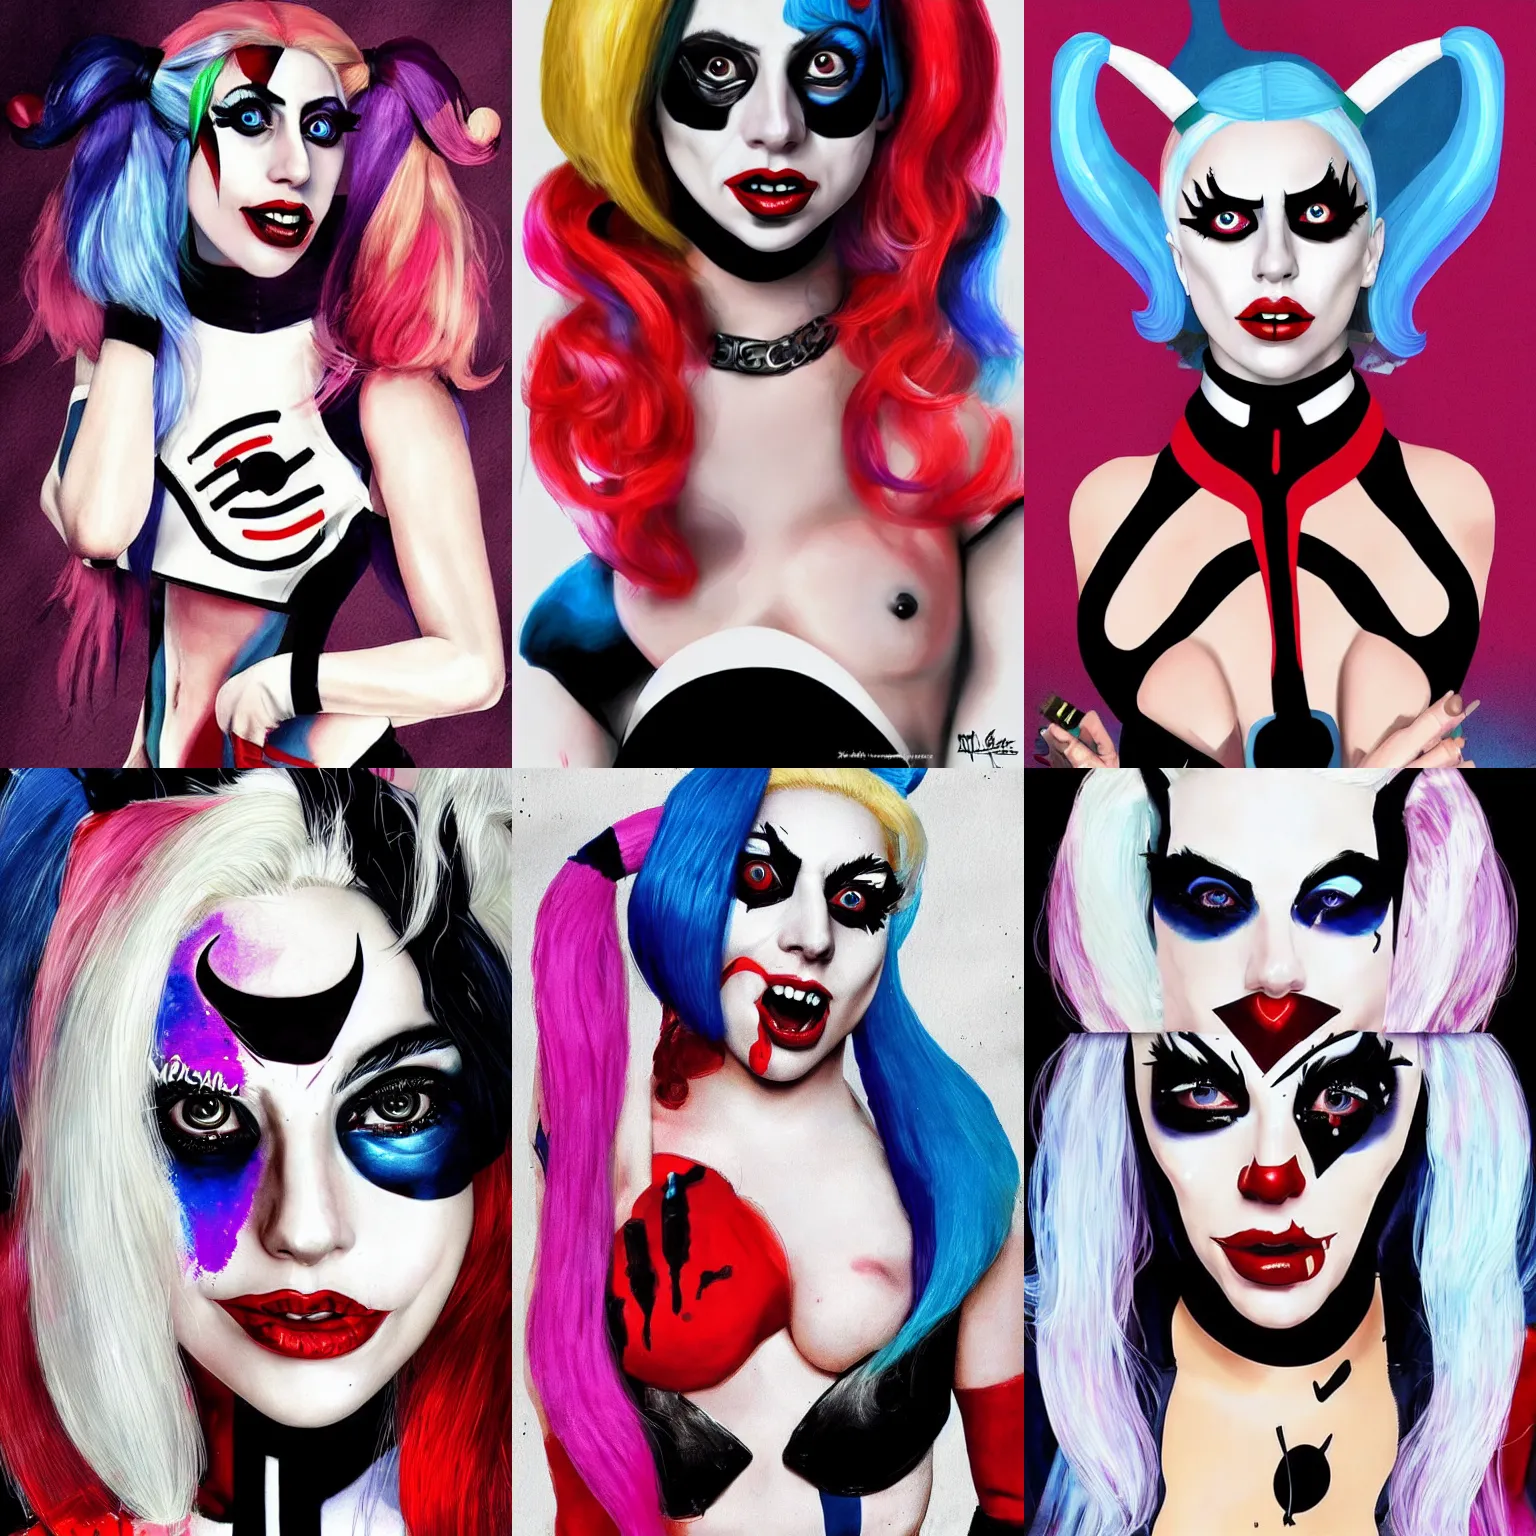 Prompt: Lady Gaga as Harley Quinn, modern art, trending on artstation